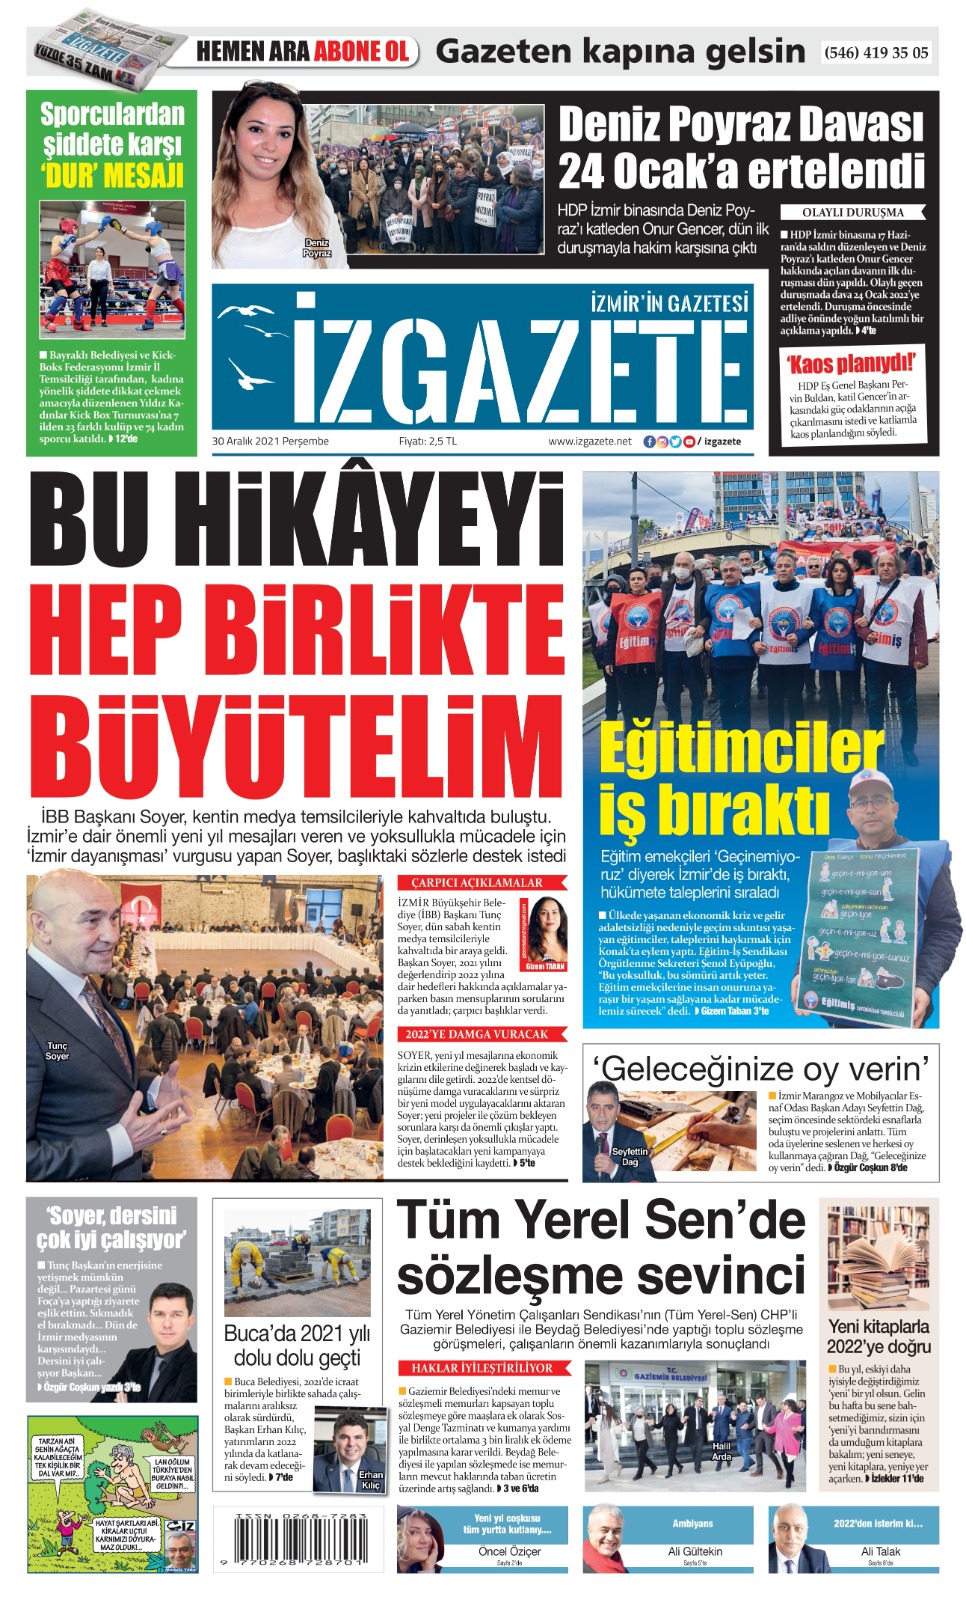 İz Gazete - İzmir'in Gazetesi - 30.12.2021 Manşeti